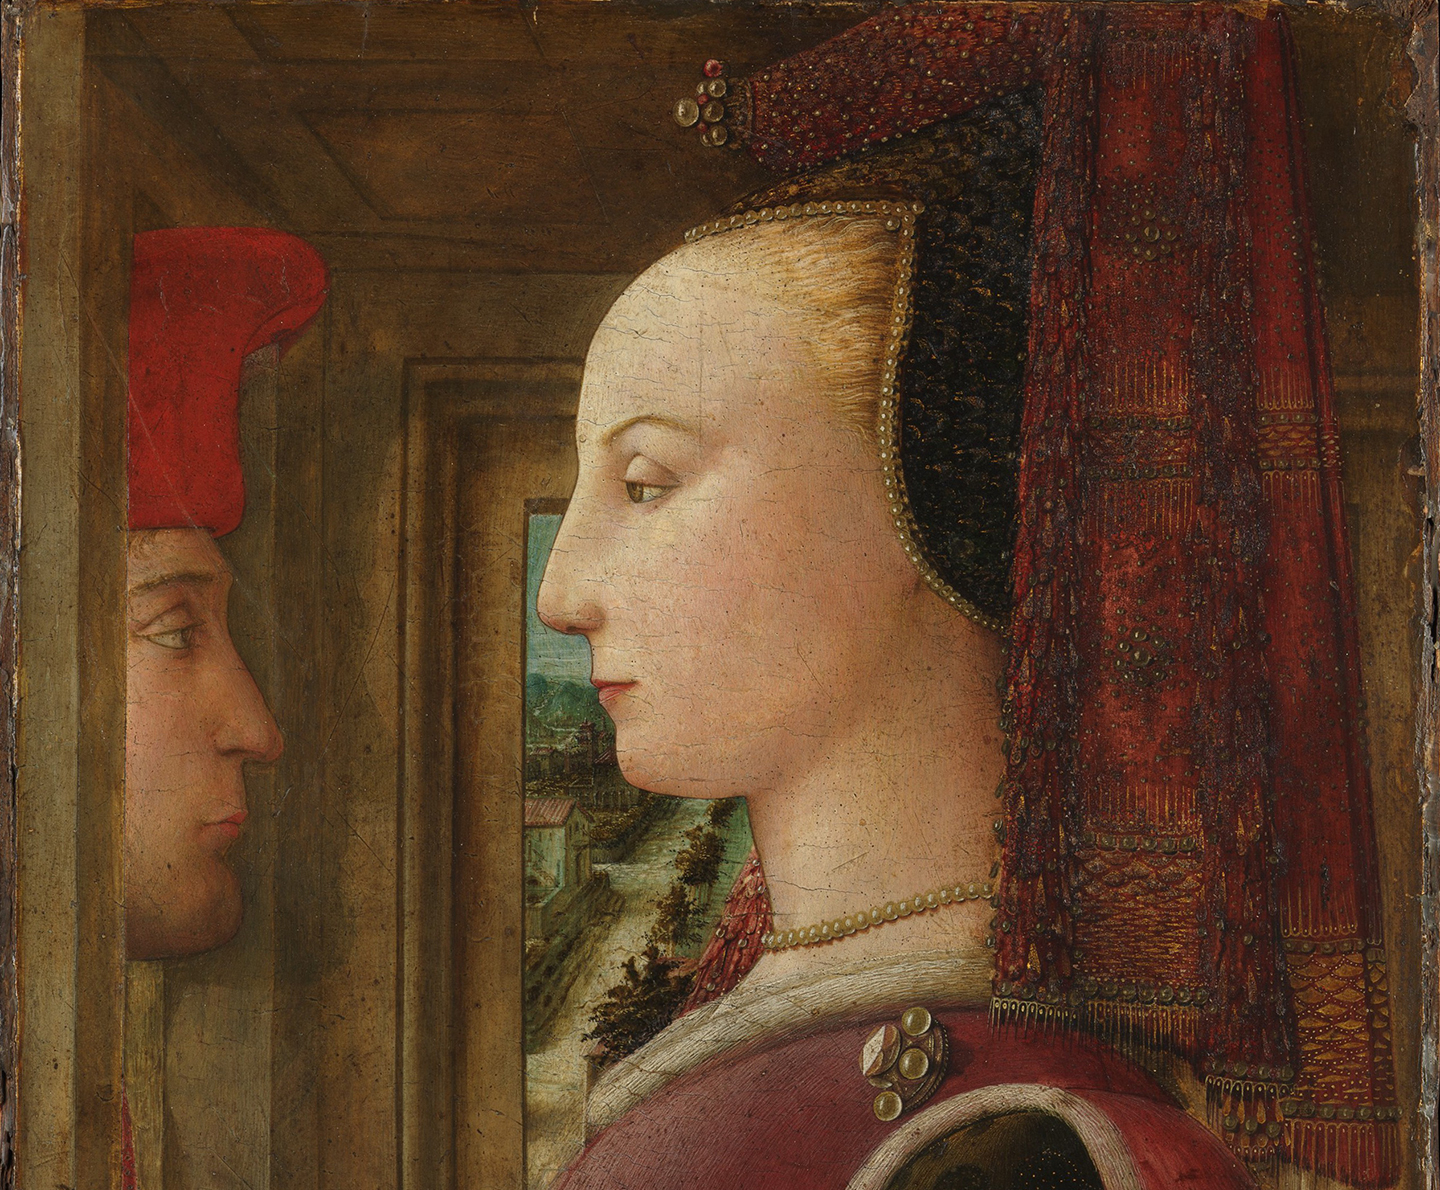 Chi tiết bức tranh “Portrait of a Woman With a Man at a Casement” (Chân dung người phụ nữ và người đàn ông bên cửa sổ) của họa sỹ Fra Filippo Lippi, khoảng năm 1440. (Ảnh: Tư liệu công cộng)